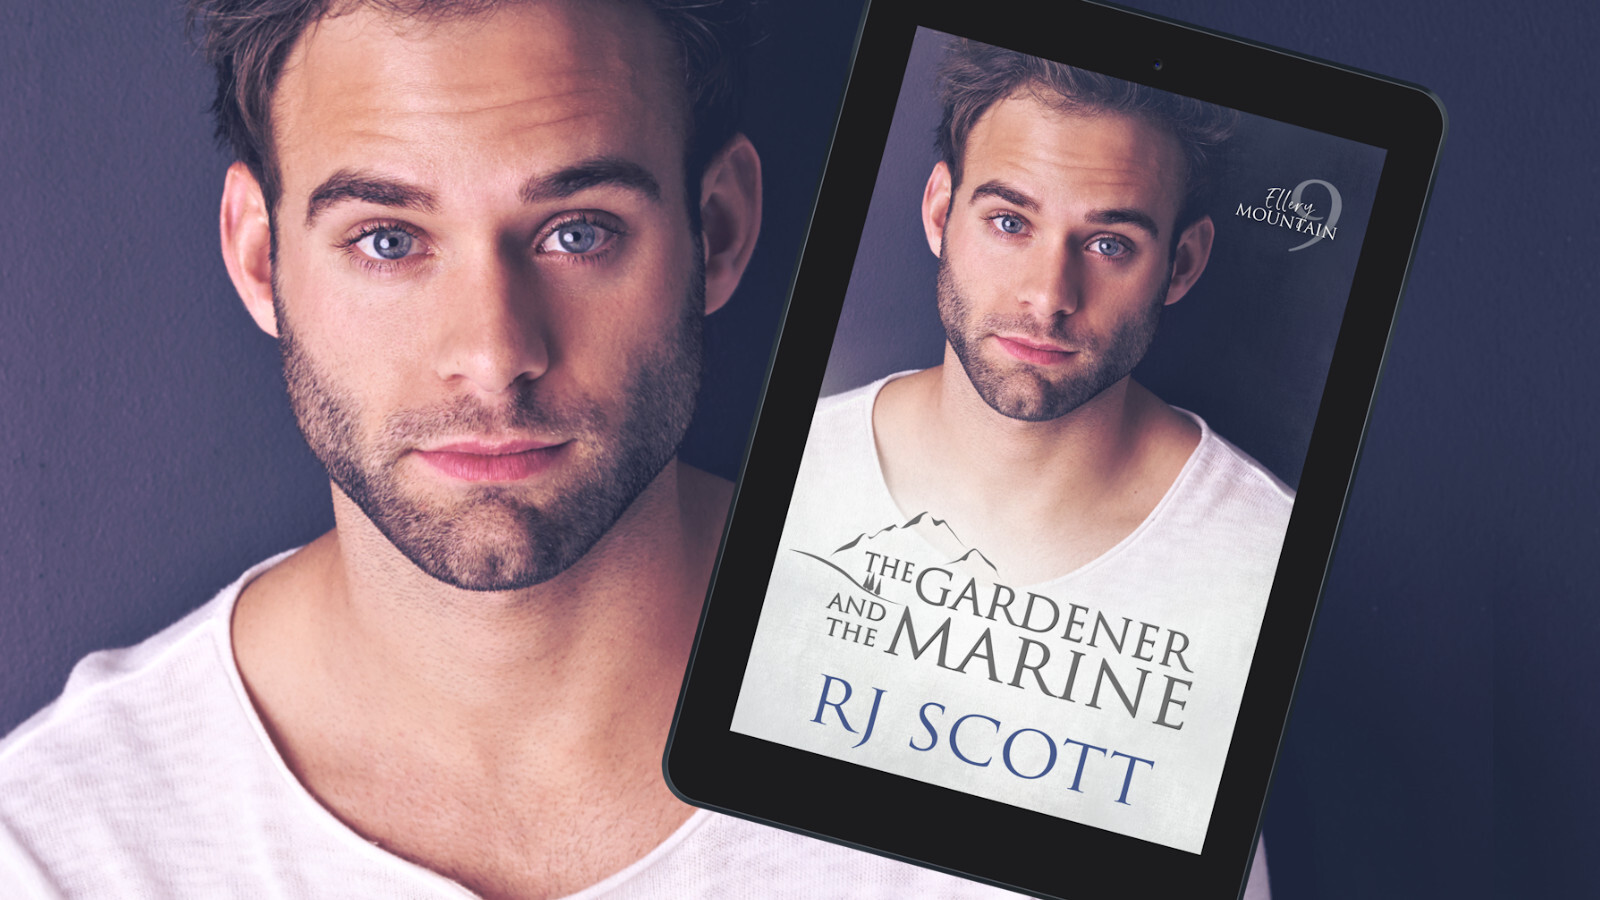 The Gardener and the Marine - RJ Scott MM Romance Author